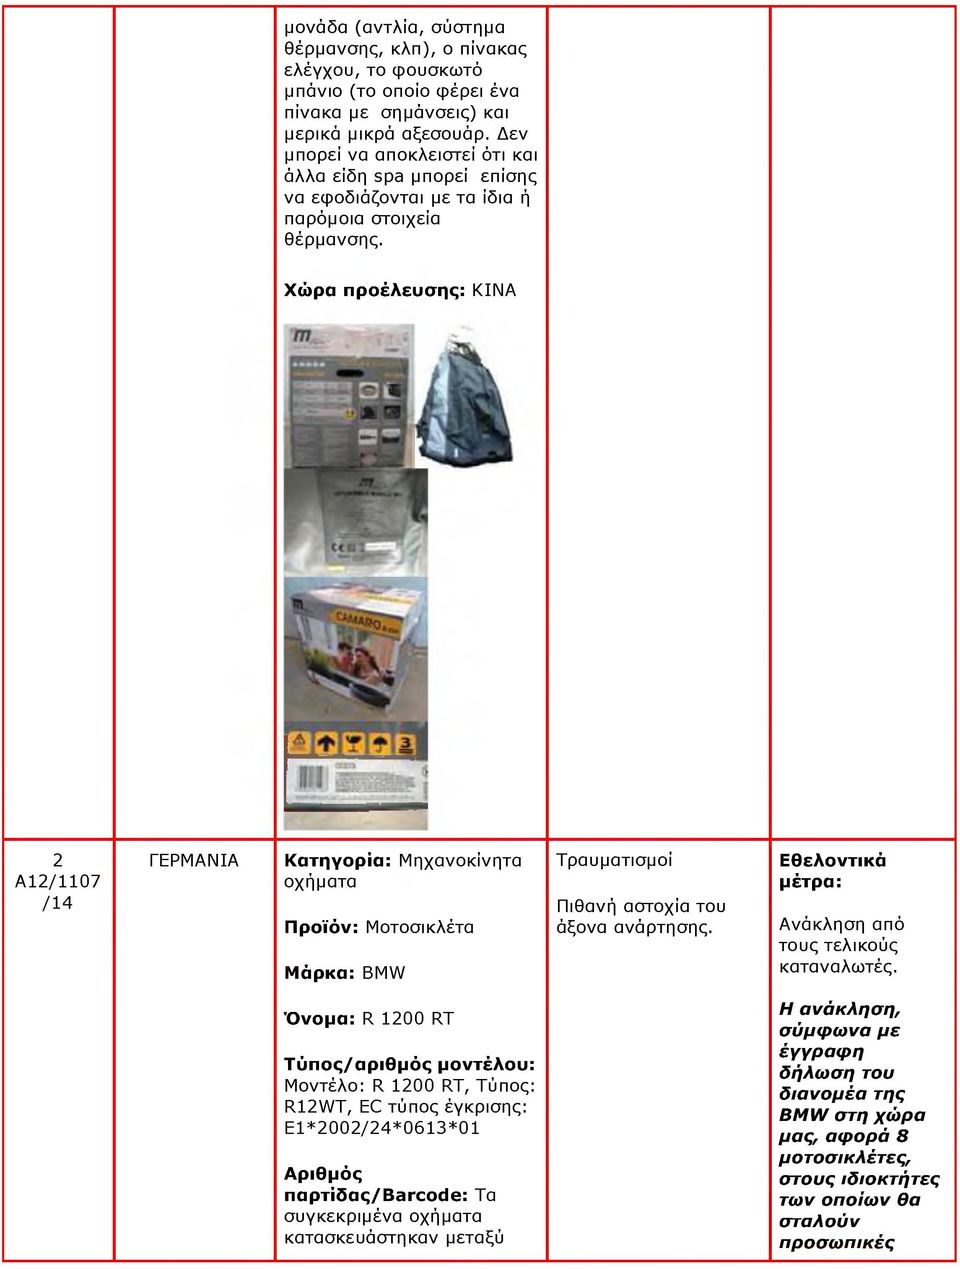 2 A12/1107 ΓΕΡΜΑΝΙΑ Κατηγορία: Μηχανοκίνητα οχήματα Προϊόν: Μοτοσικλέτα Μάρκα: BMW Τραυματισμοί Πιθανή αστοχία του άξονα ανάρτησης. Εθελοντικά Ανάκληση από τους τελικούς καταναλωτές.